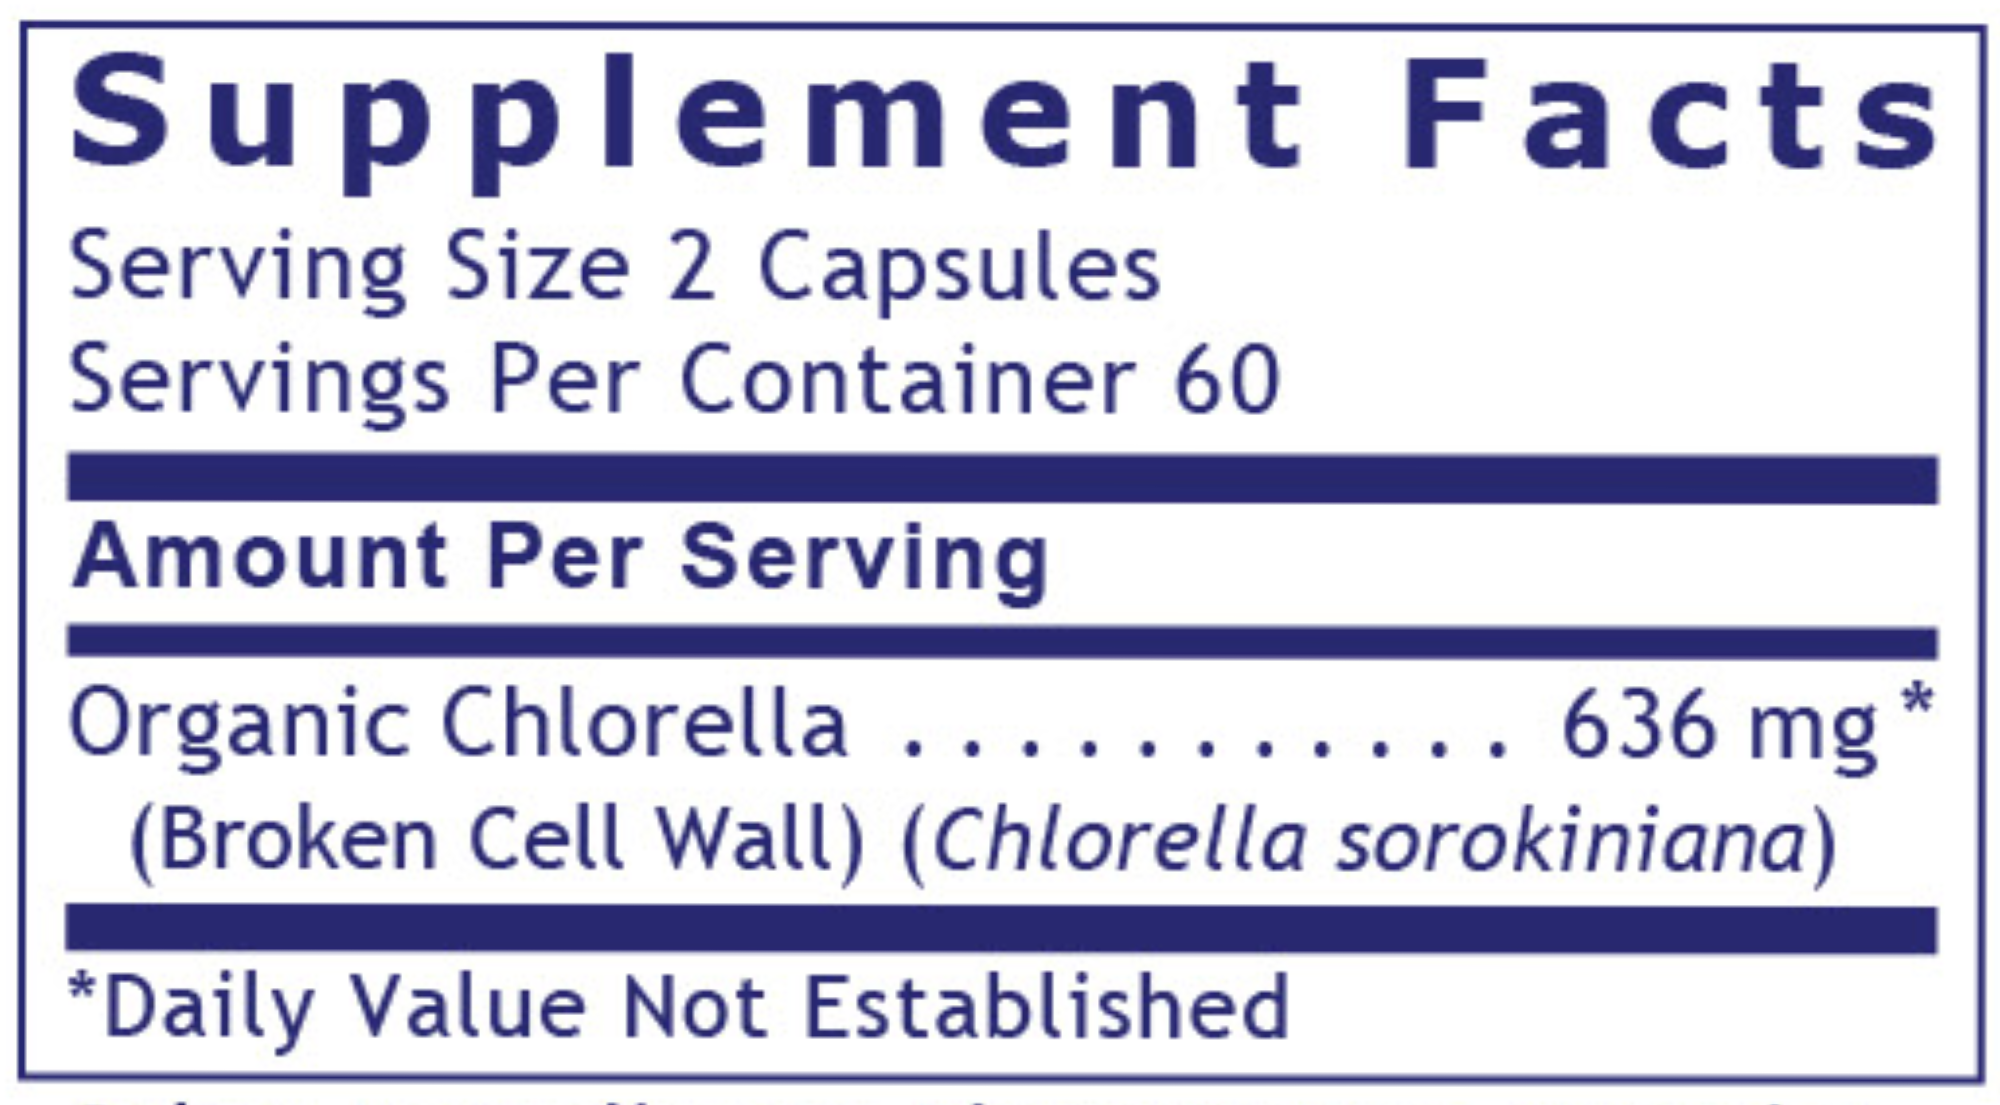 Medi-Chlorella-FX 120 vegcaps